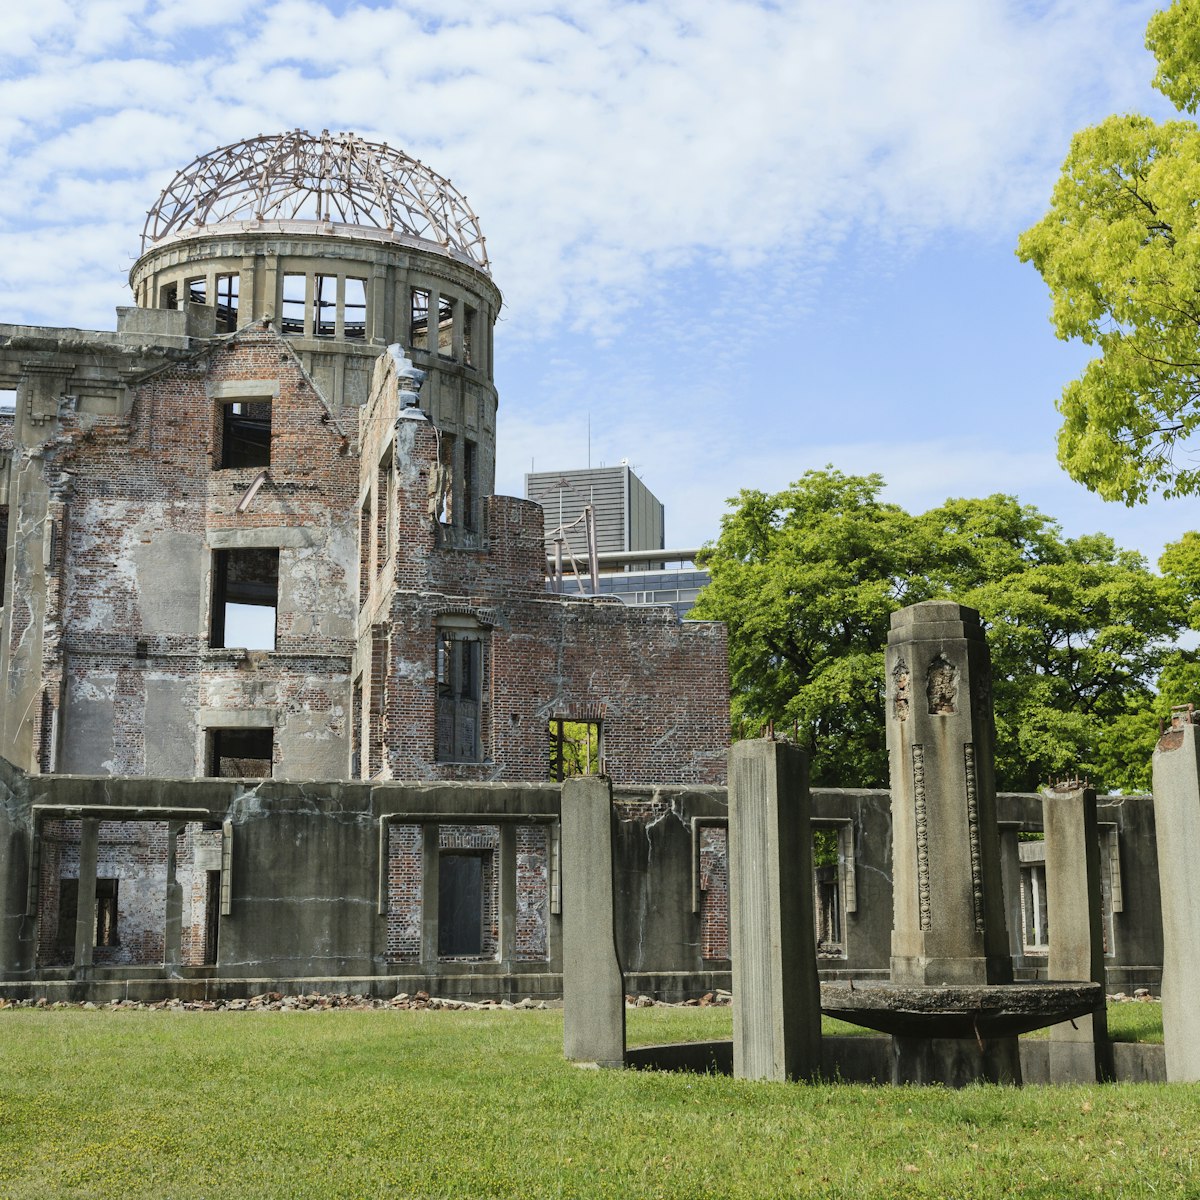 Atomic bomb dome memorial in Hiroshima, Japan